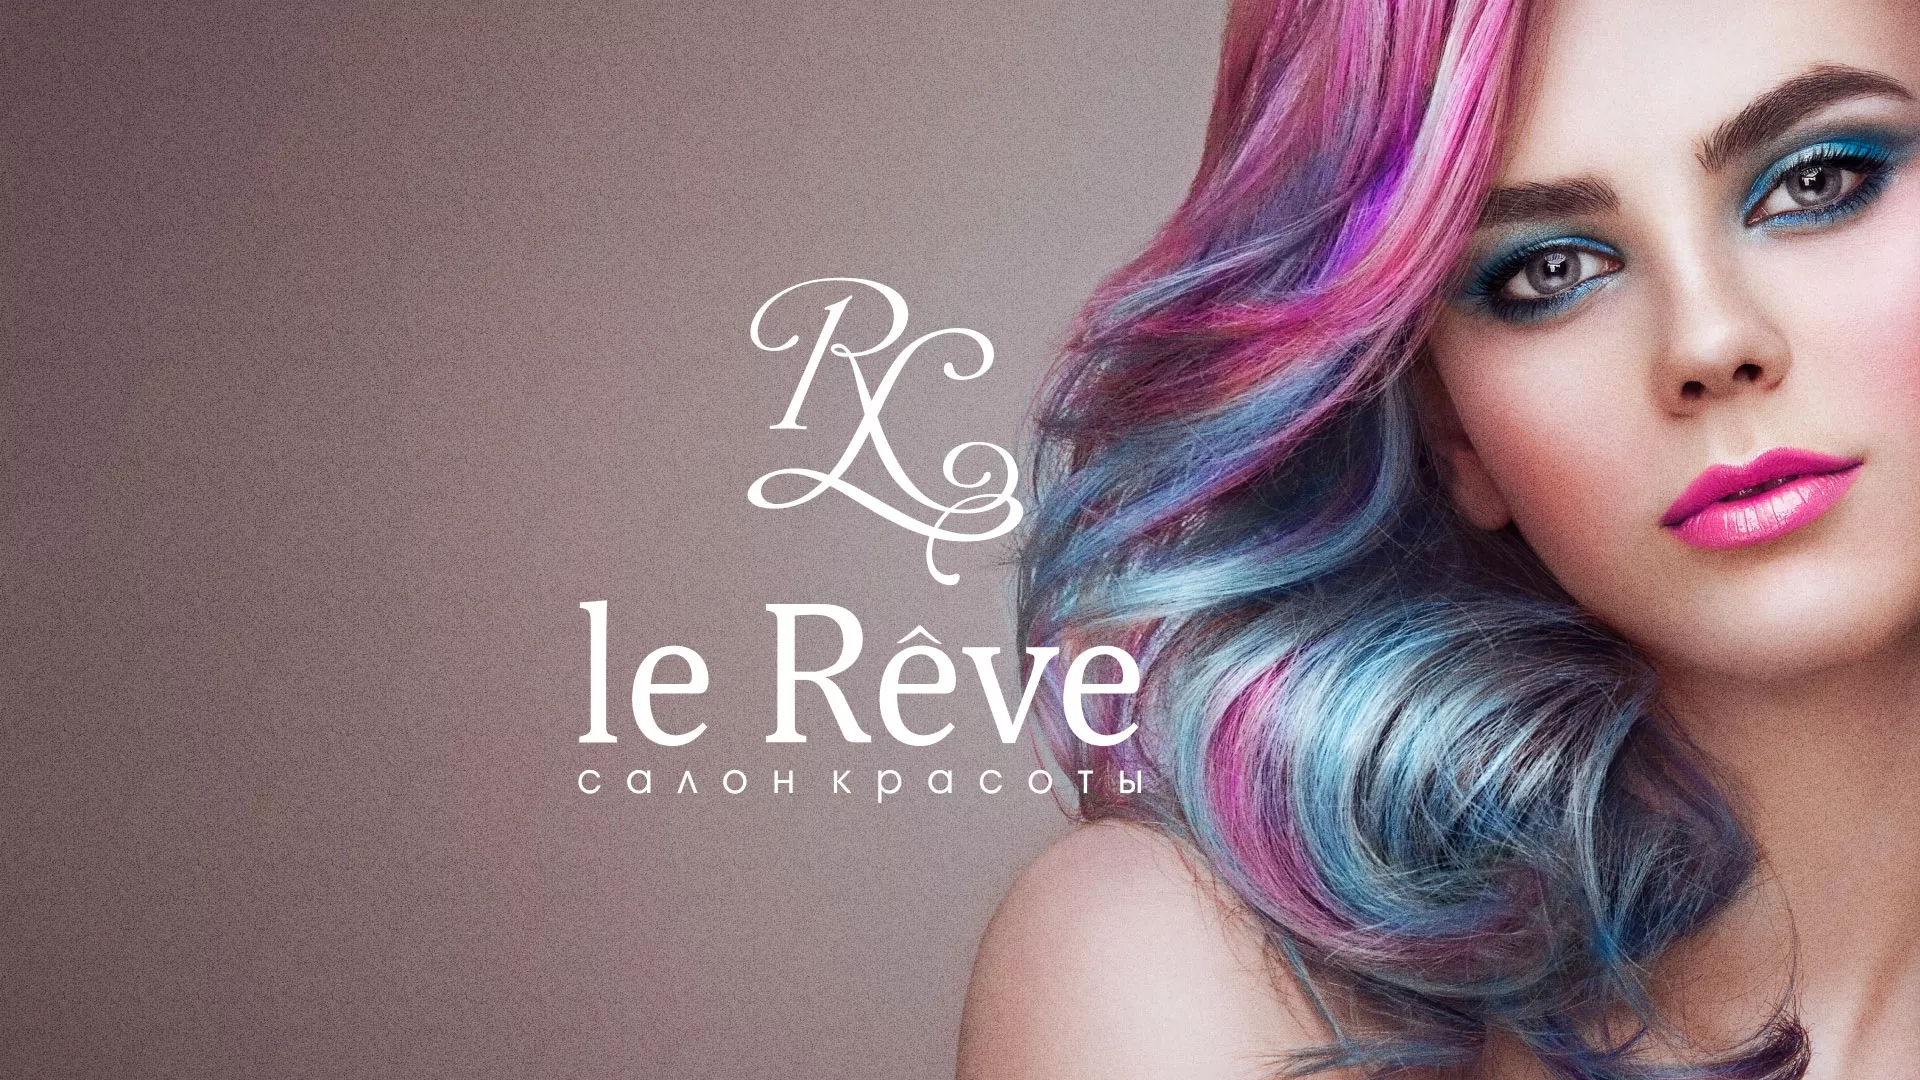 Создание сайта для салона красоты «Le Reve» в Грязовце